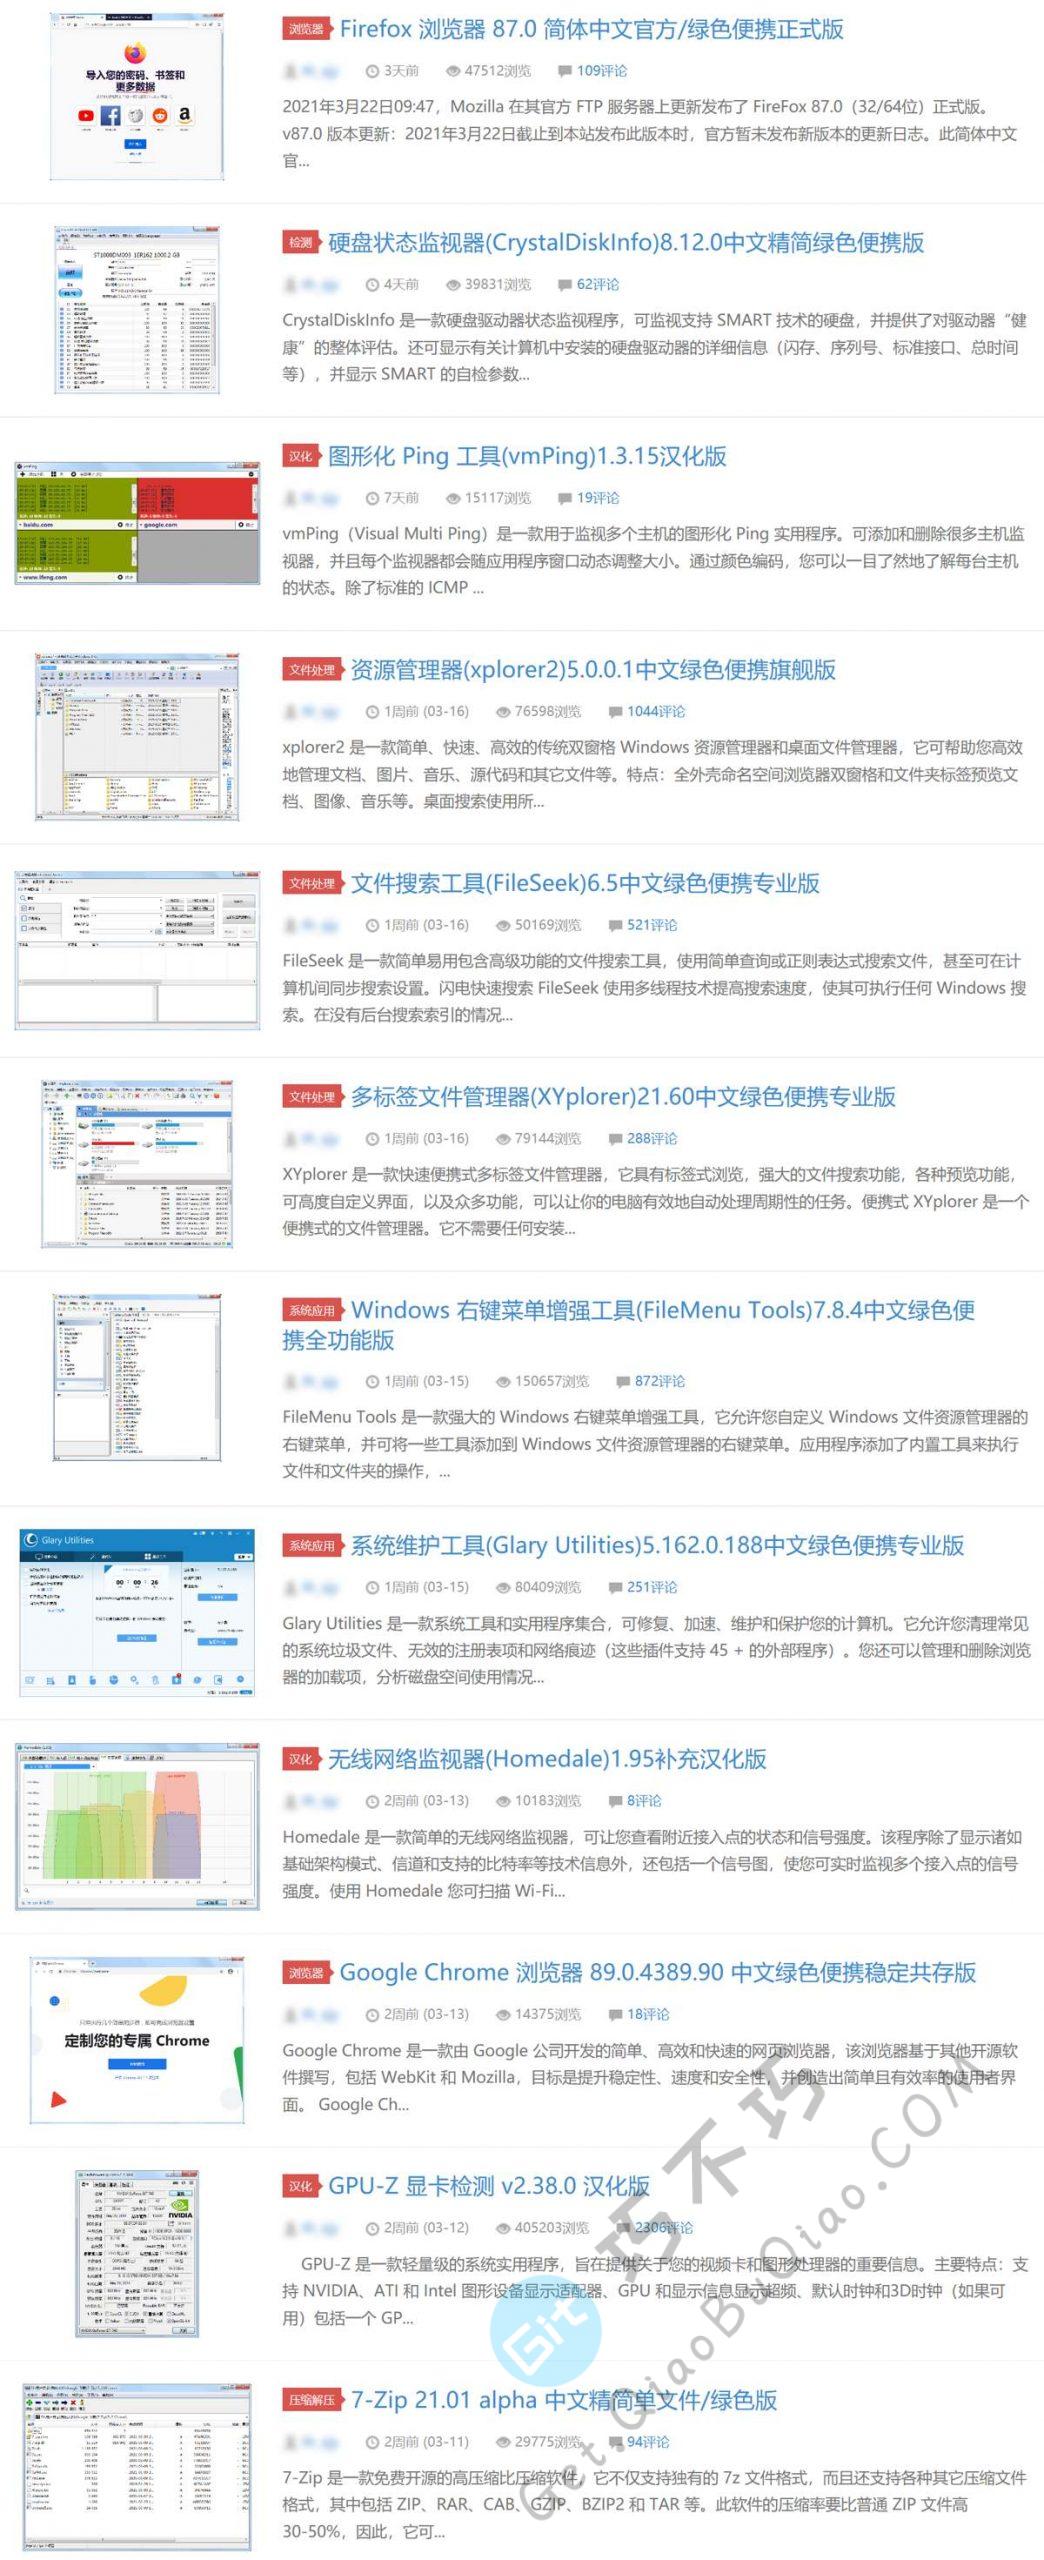 套路少，品质高的专业软件应用下载中文分享网站,破解、已激活、汉化应有尽有